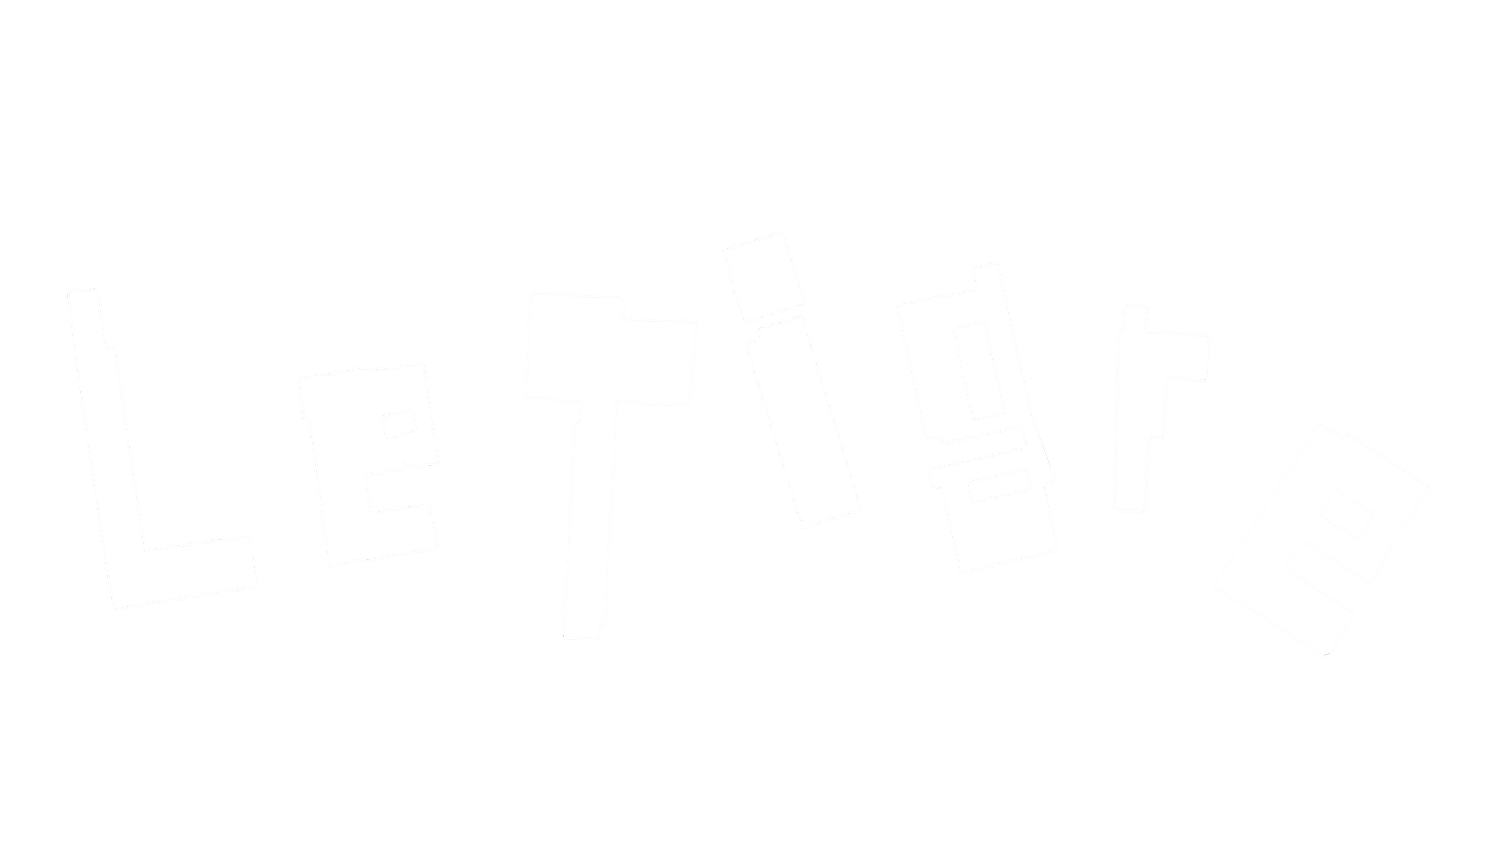 Le Tigre